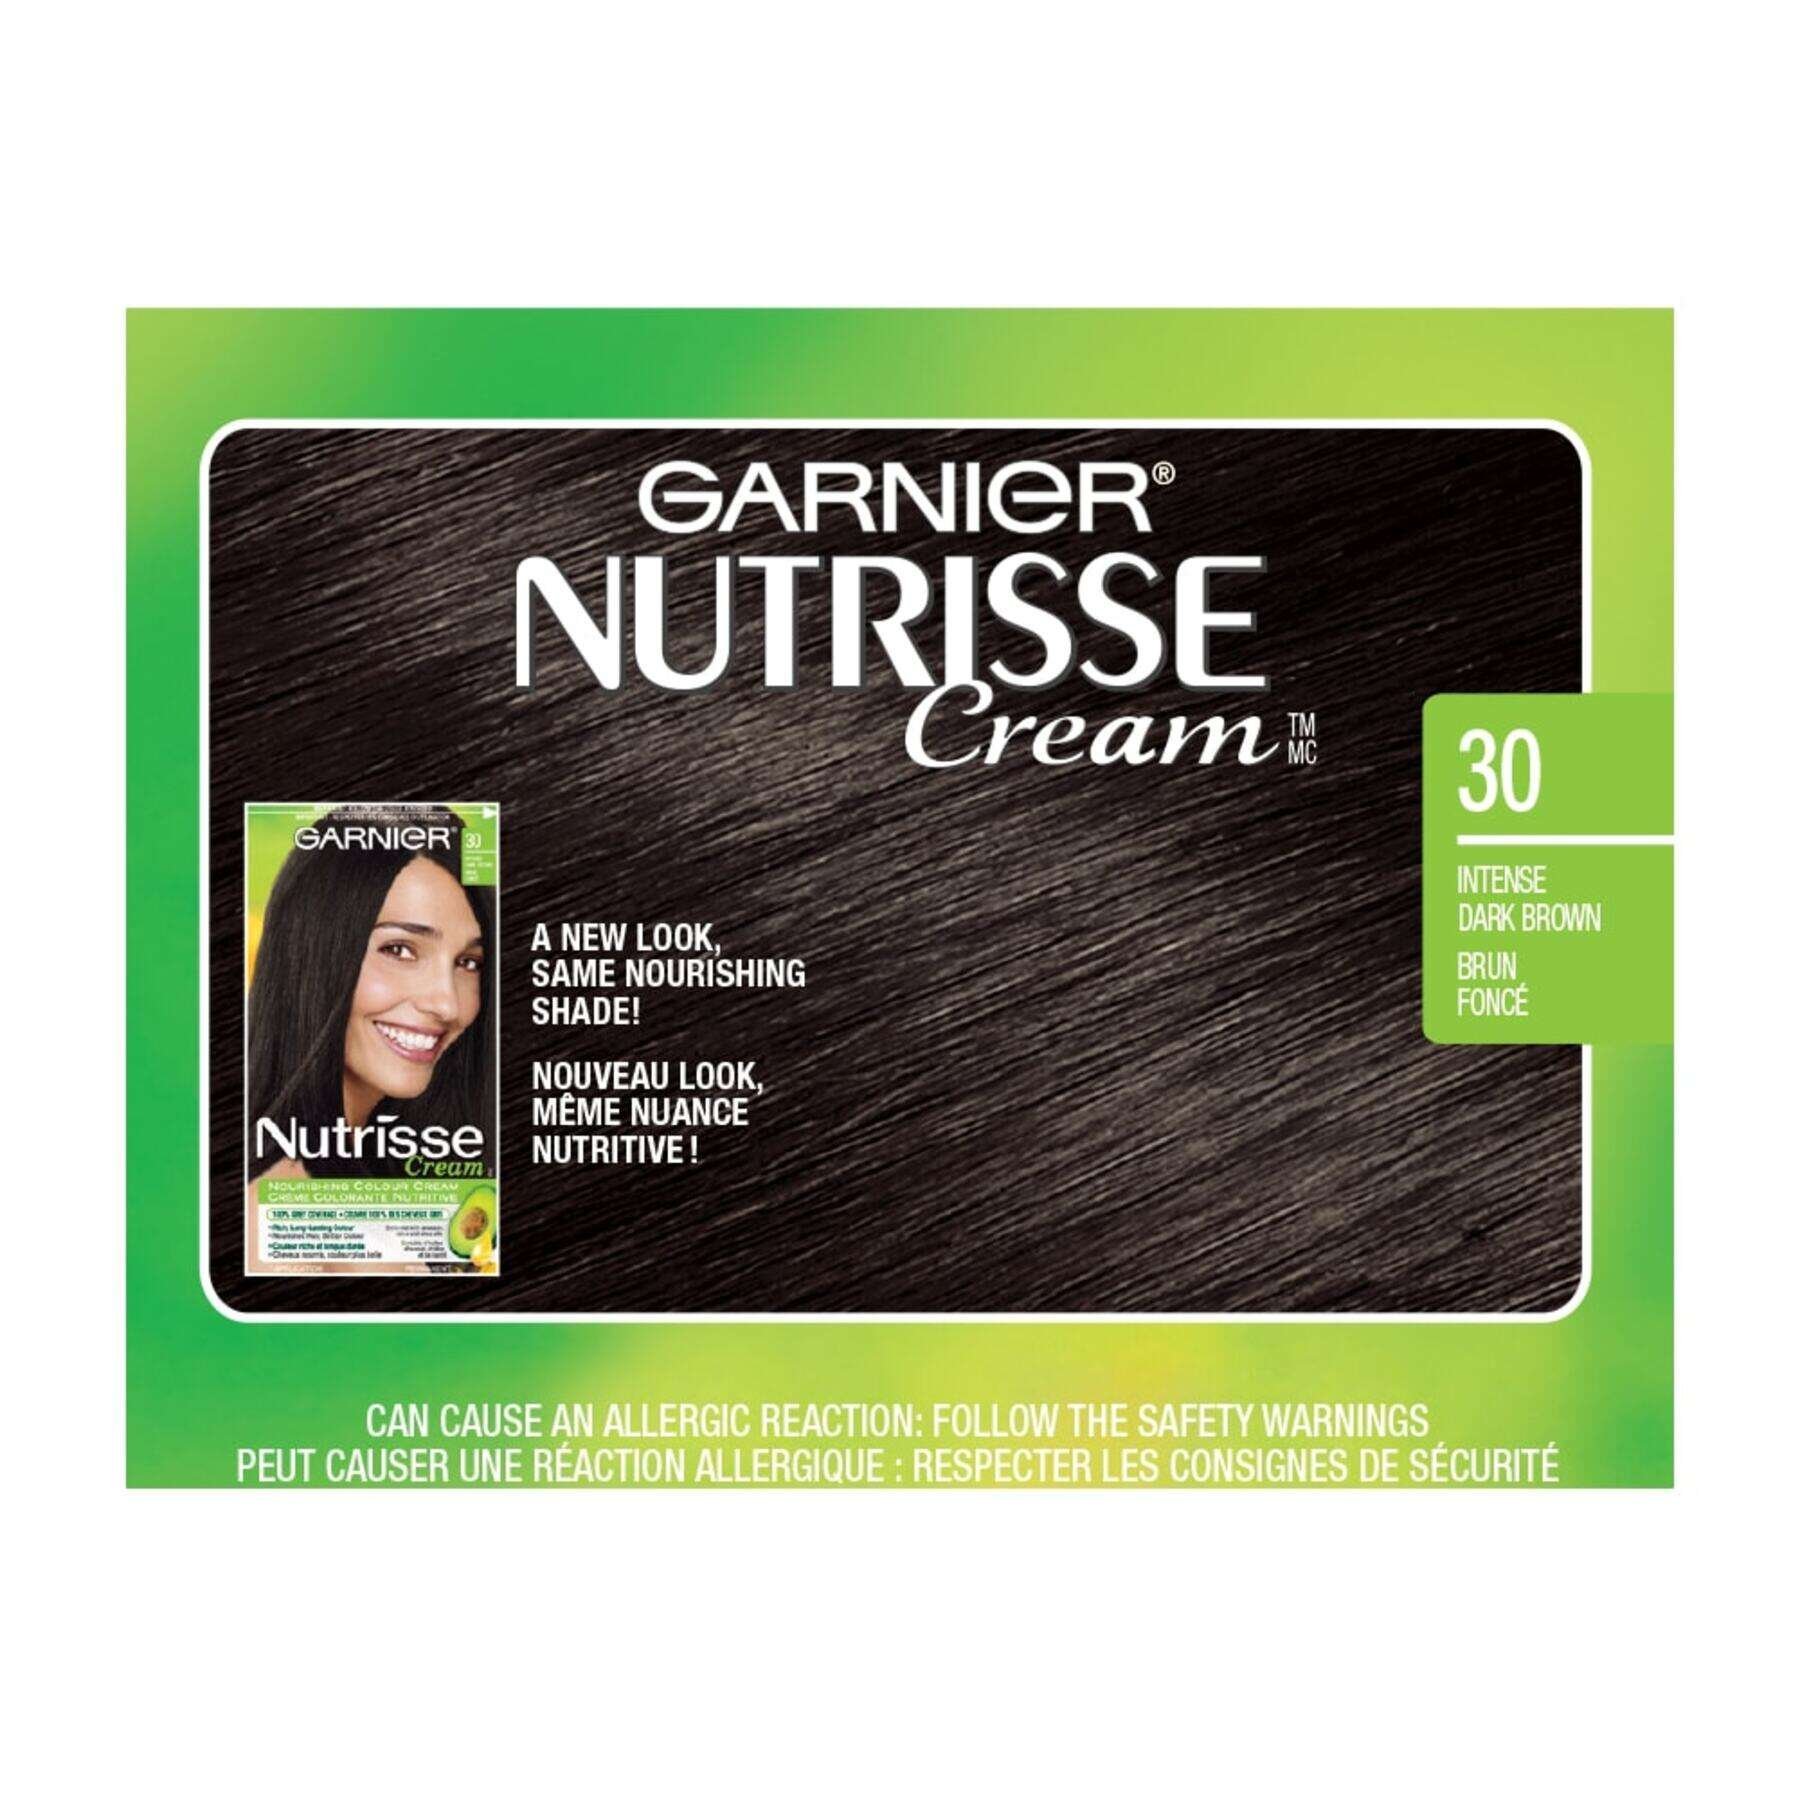 garnier hair dye nutrisse cream 30 intense dark brown 0770103447032 swatch